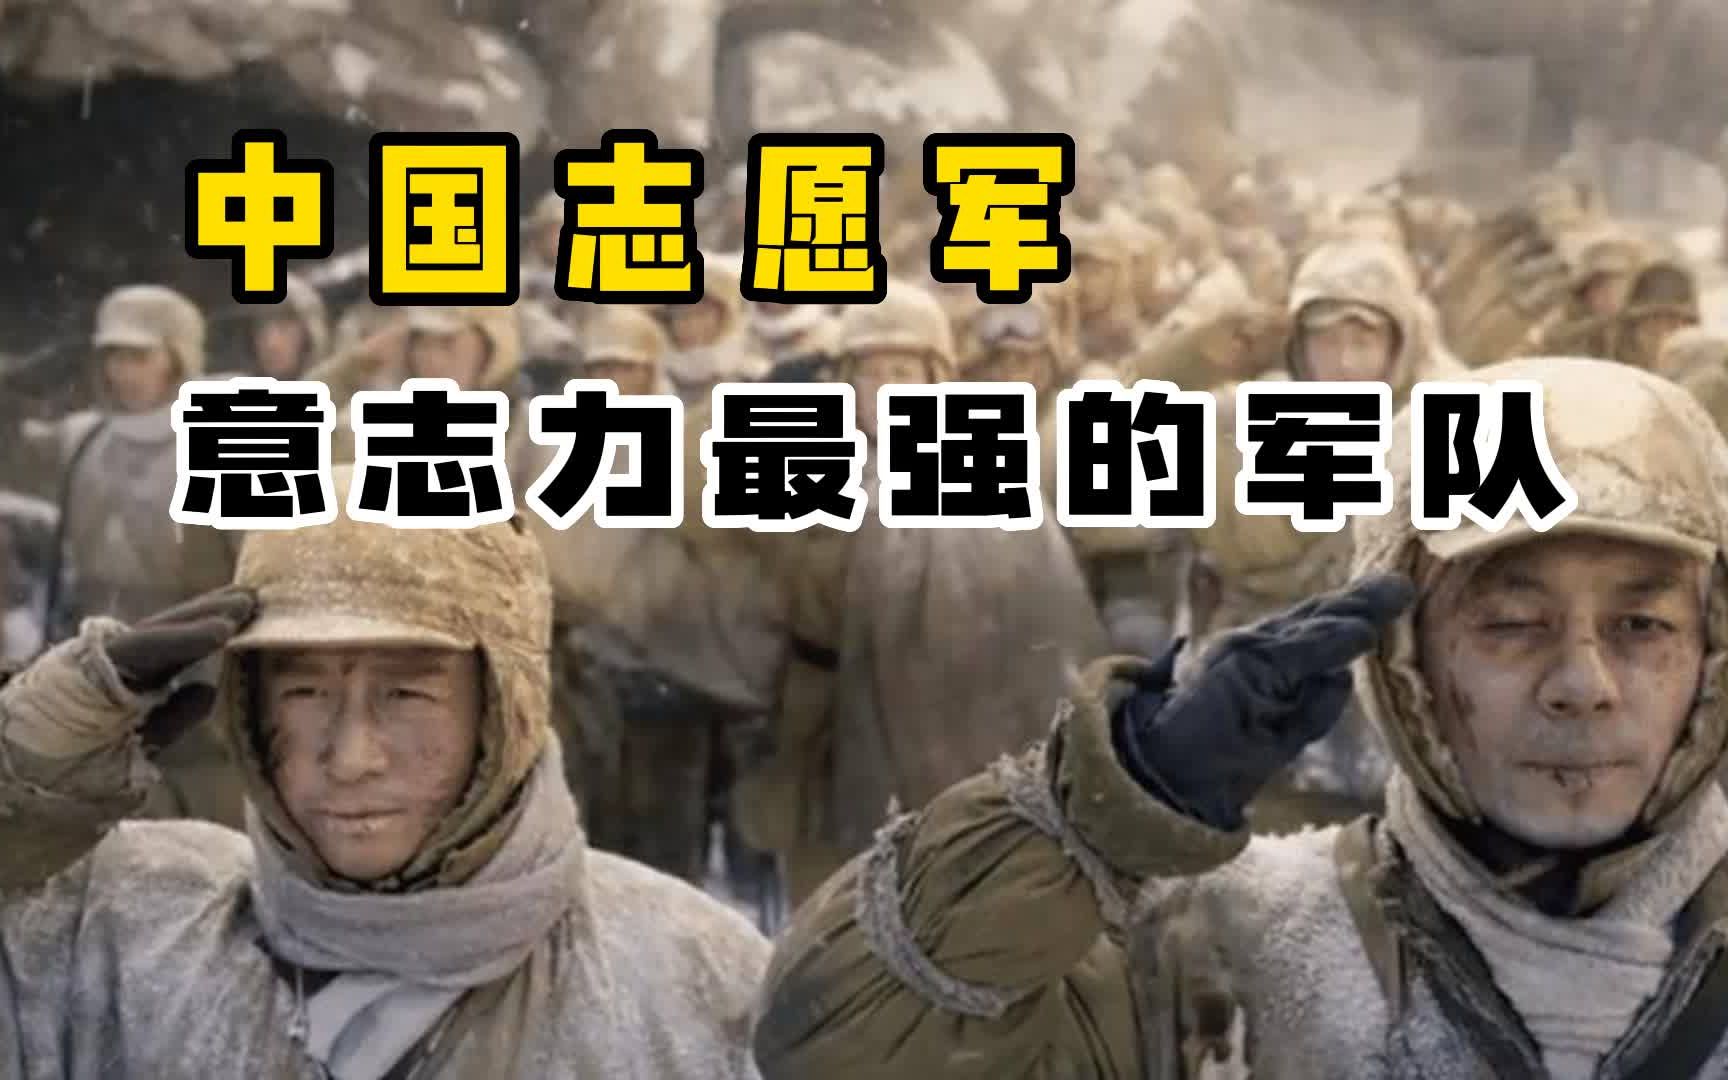 中国志愿军战斗意志最强的军队